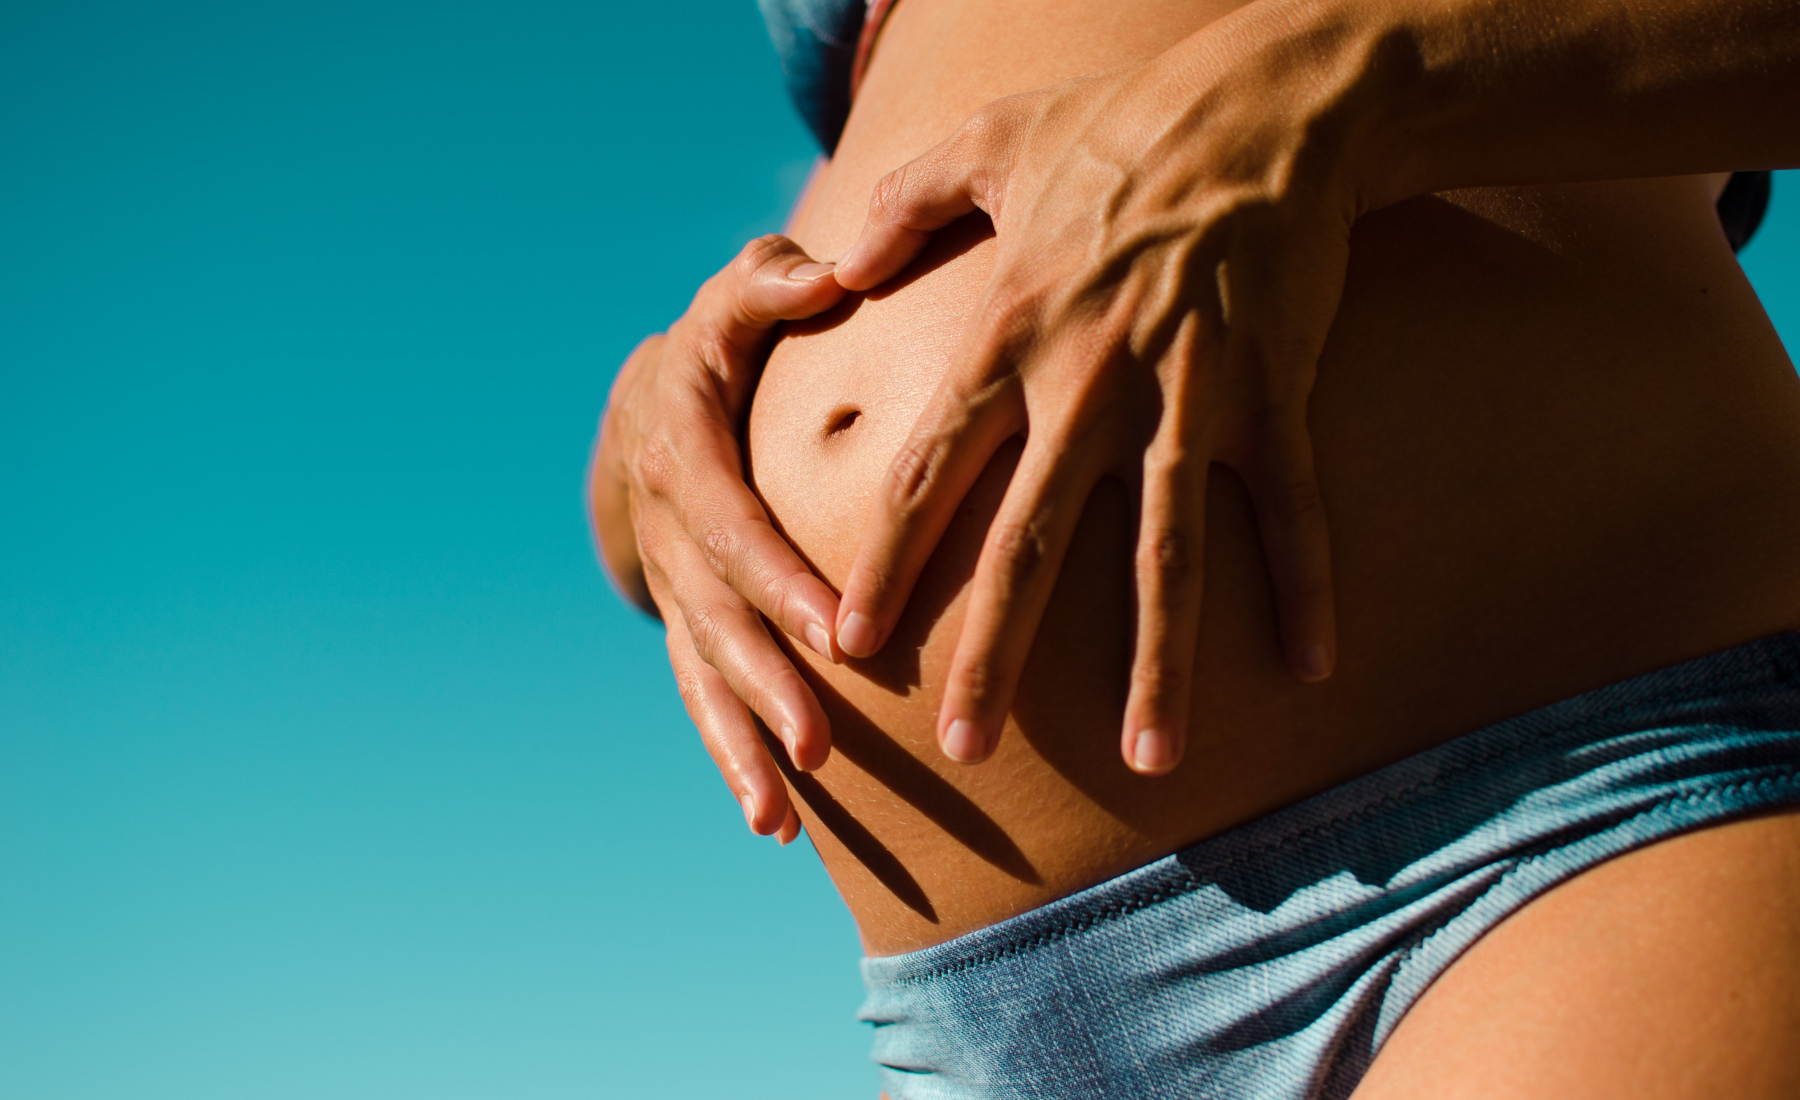 Les suppléments pendant la grossesse : Ce qui est sûr et ce qui ne l'est pas